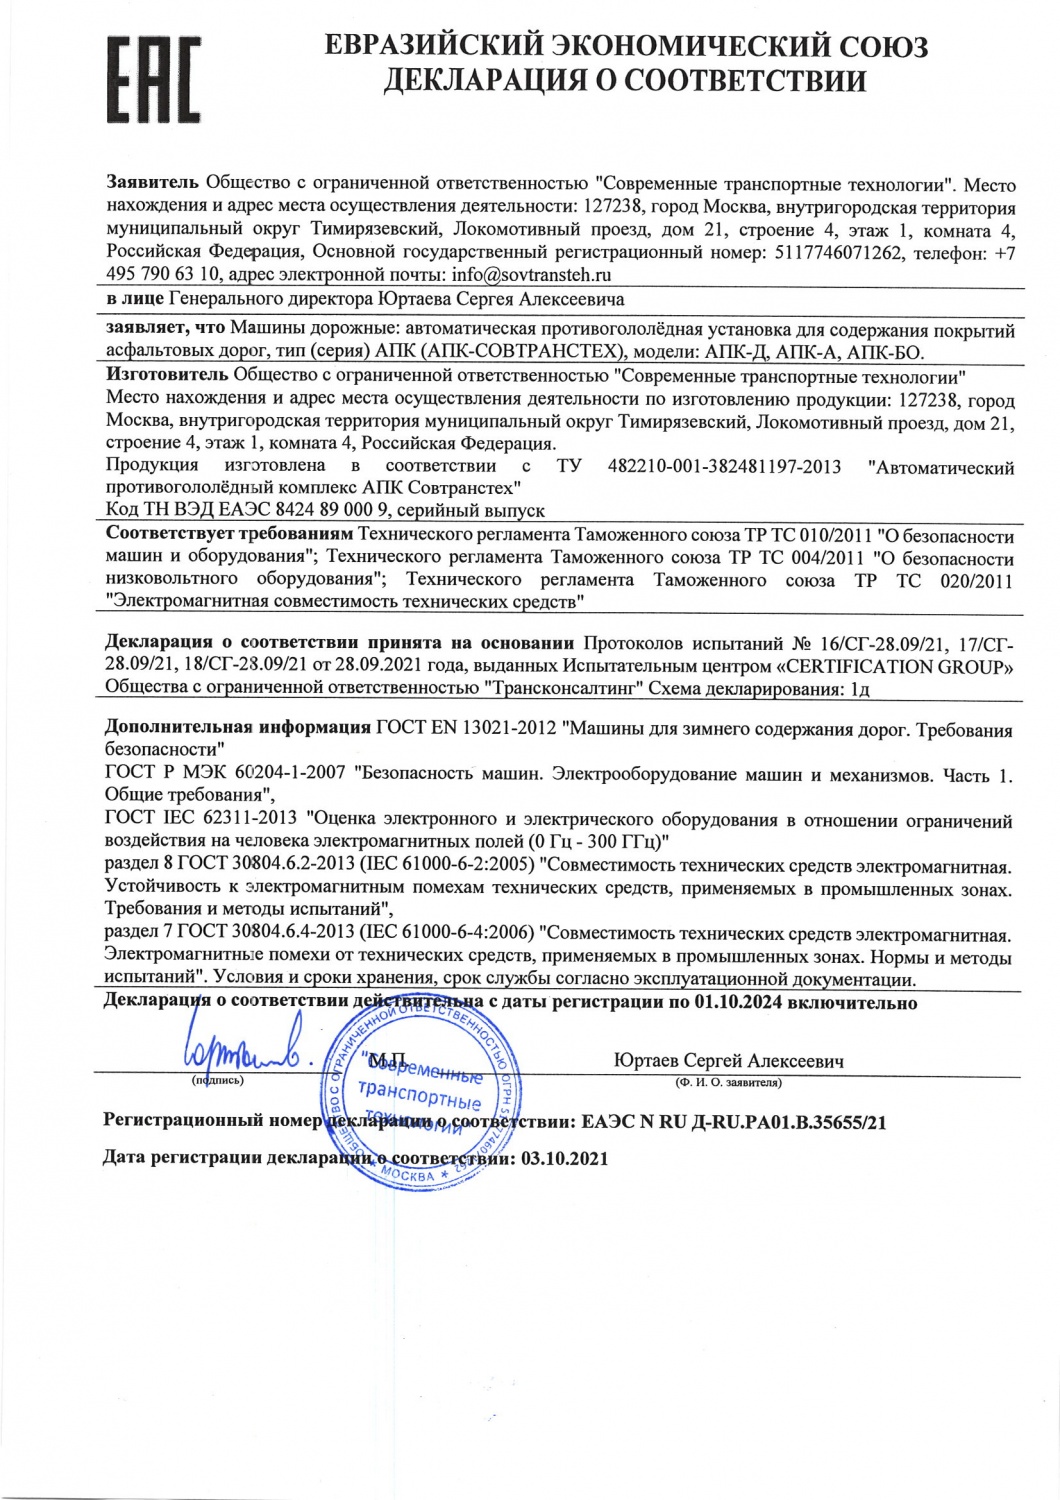 Декларация о соответствии на автоматический противогололедный комплекс АПК-СОВТРАНСТЕХ